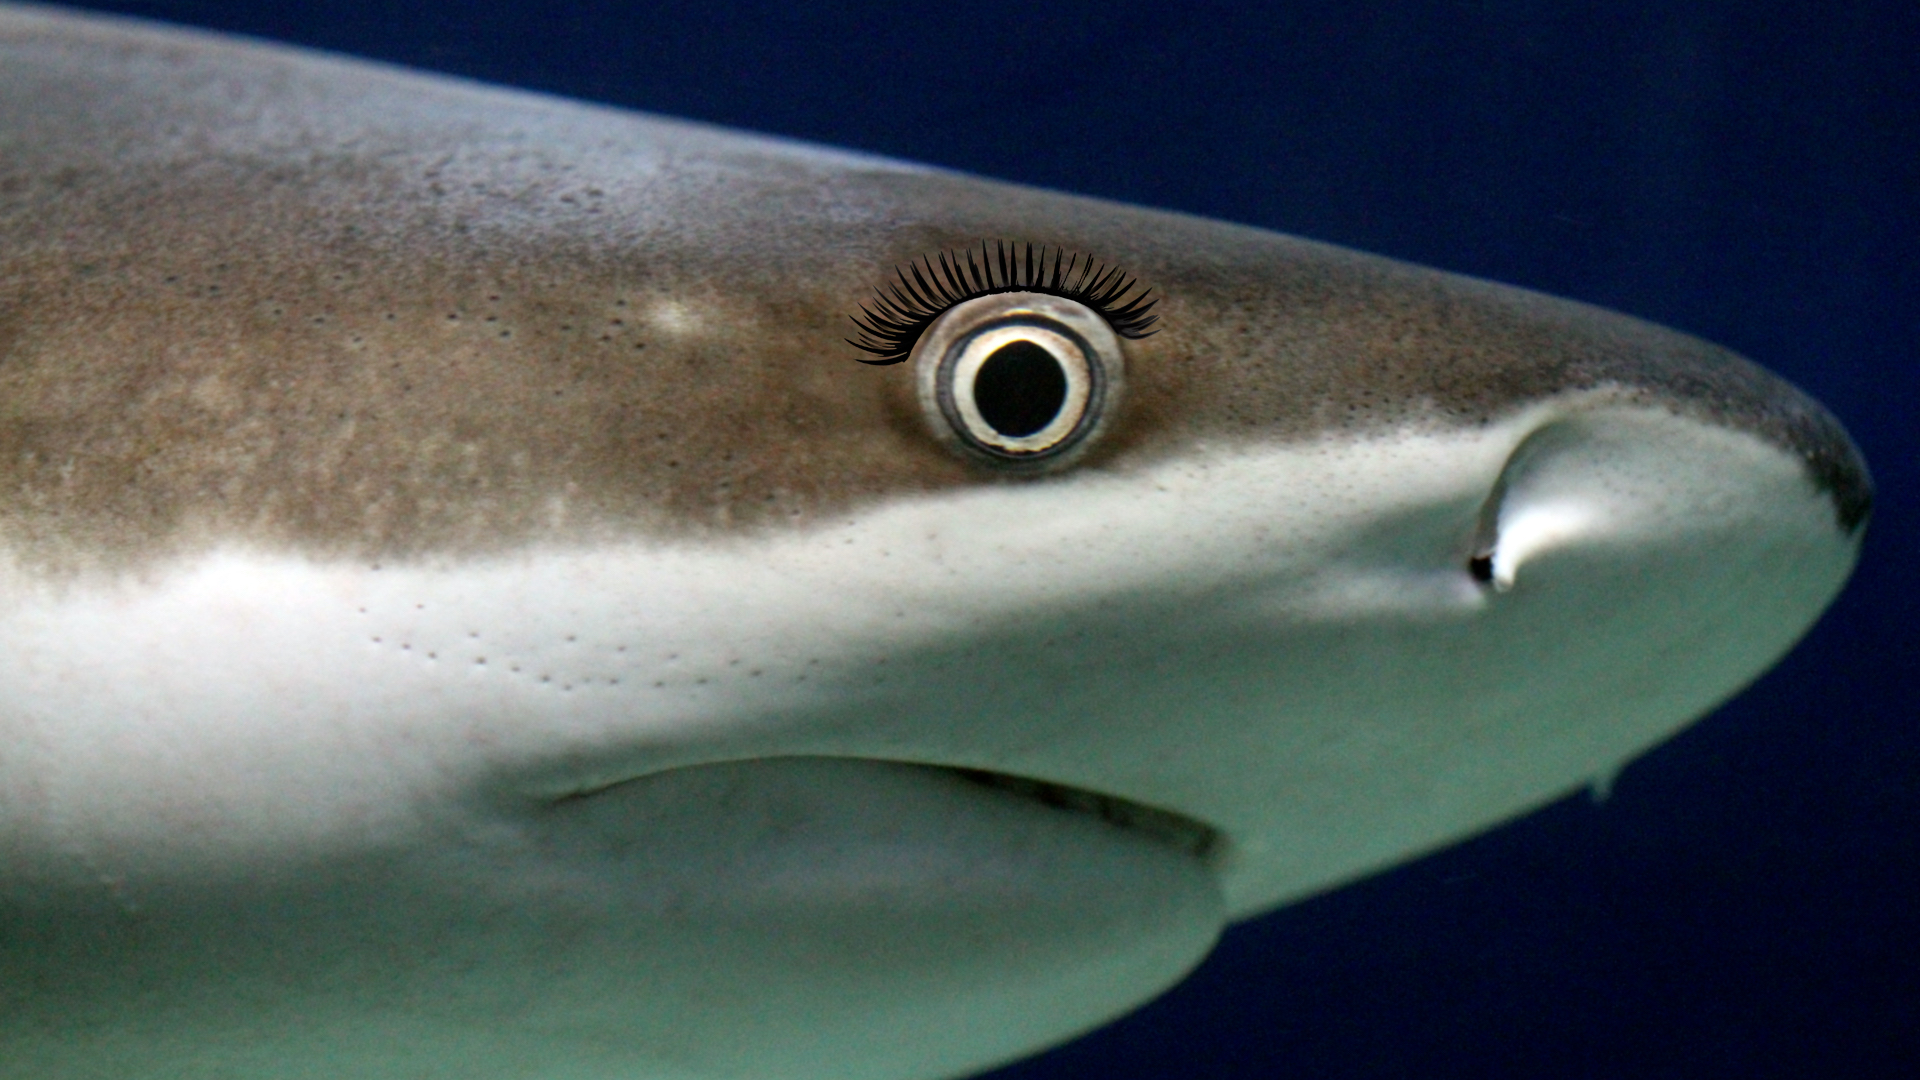 A close-up of shark's eye